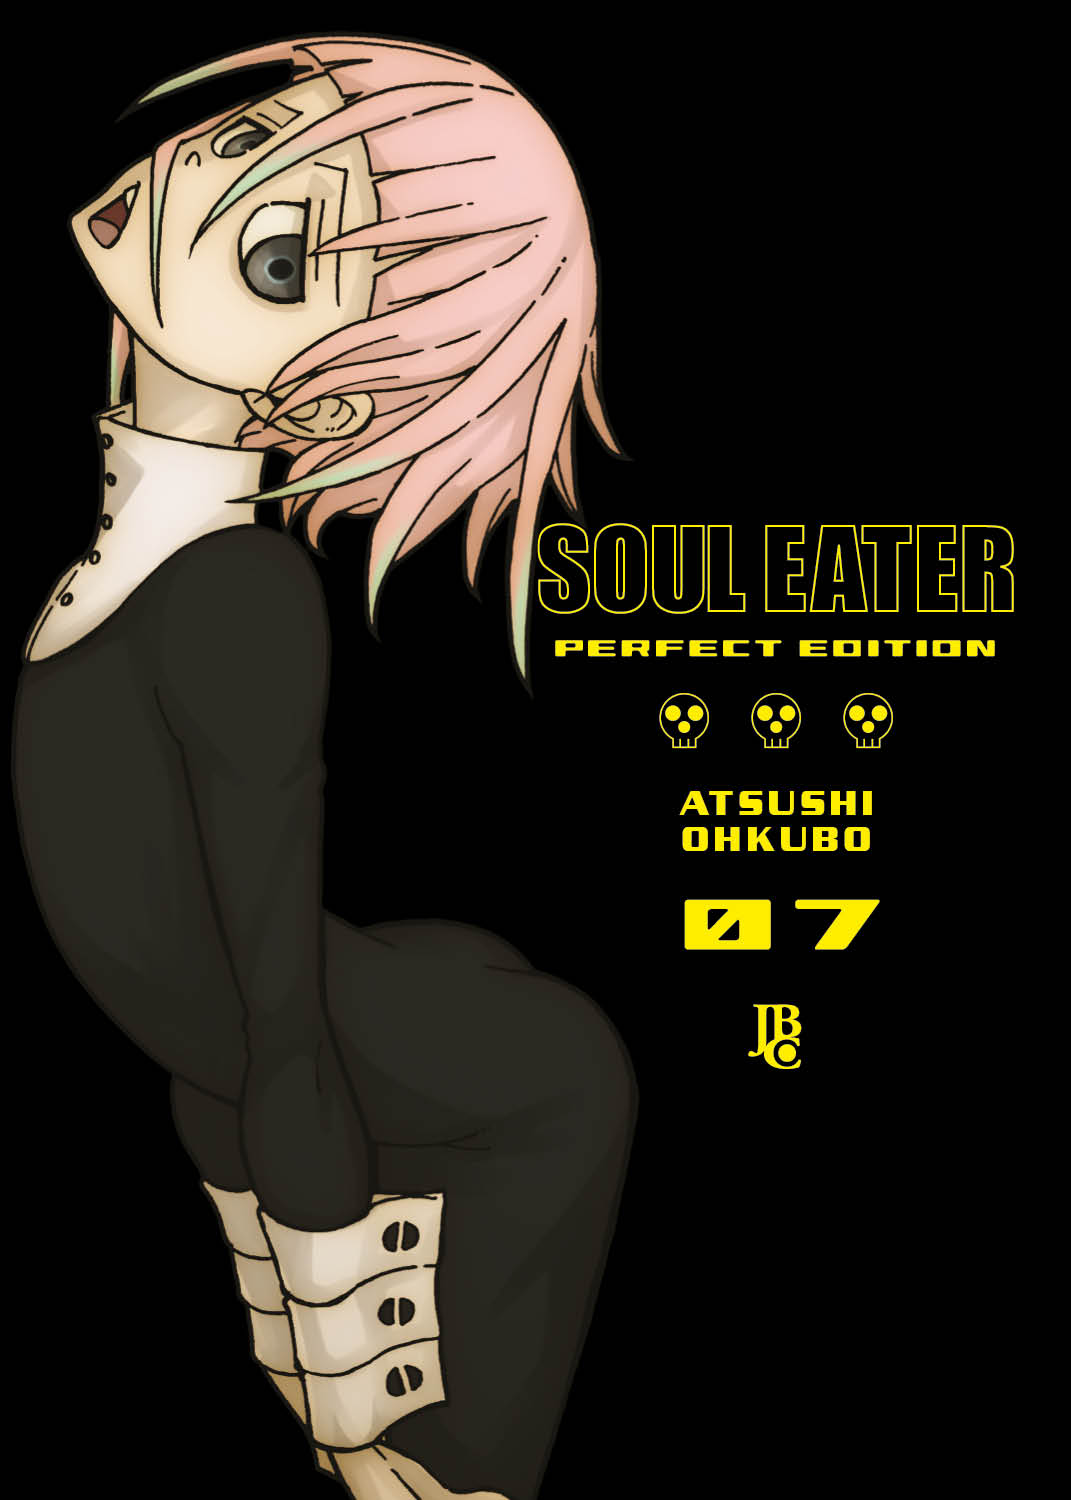 Soul Eater 04